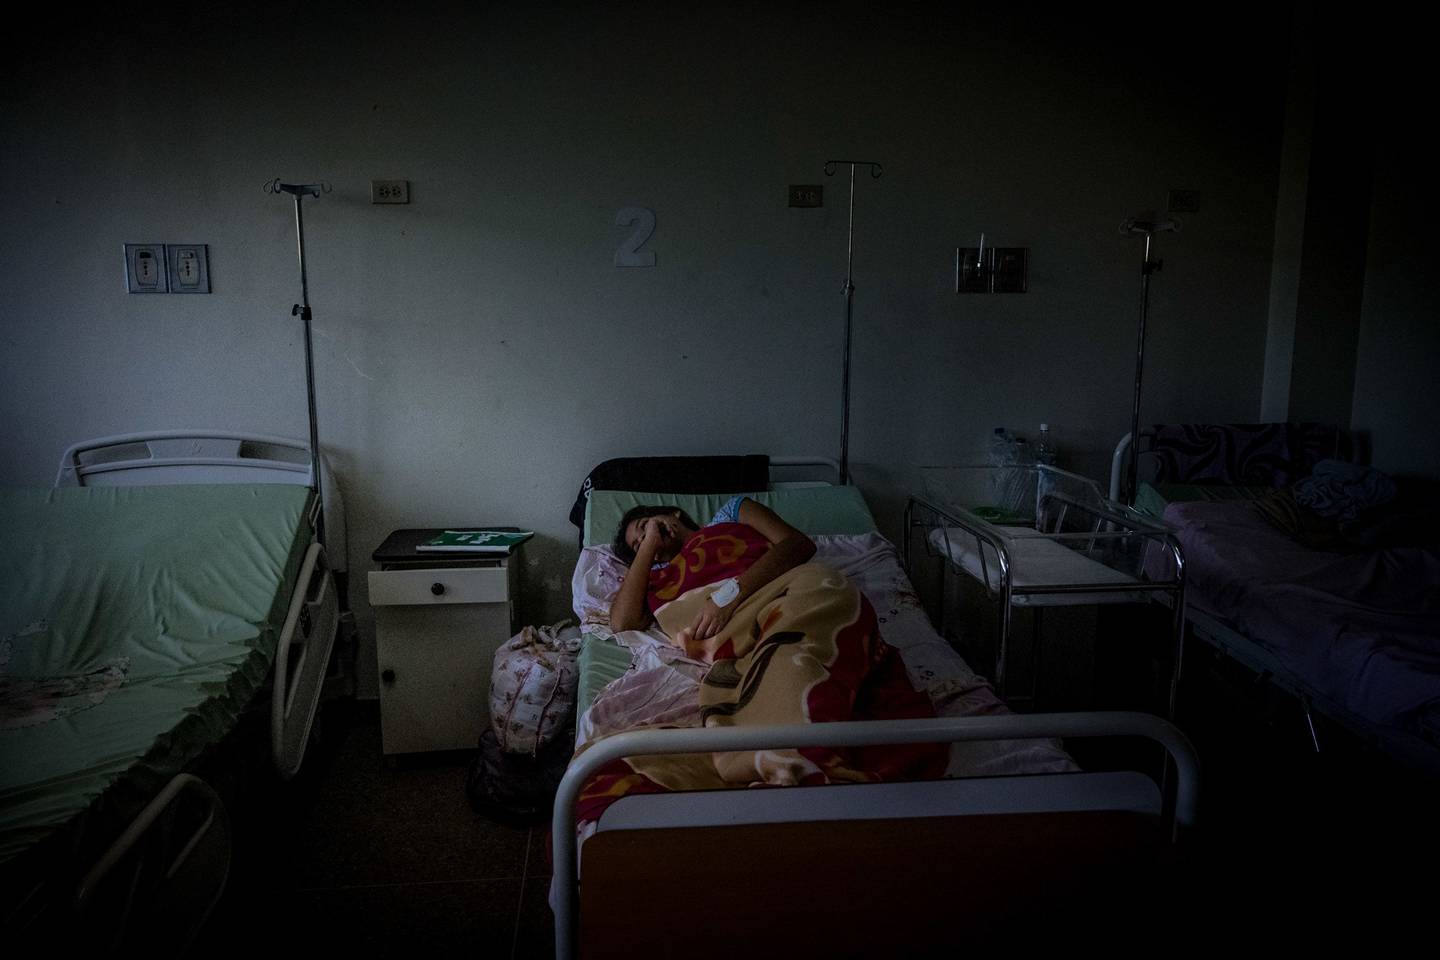 Una paciente yace en una cama dentro del hospital de maternidad Ana Teresa de Jesús Ponce en Macuto, Venezuela, el viernes 22 de febrero de 2019. dfd